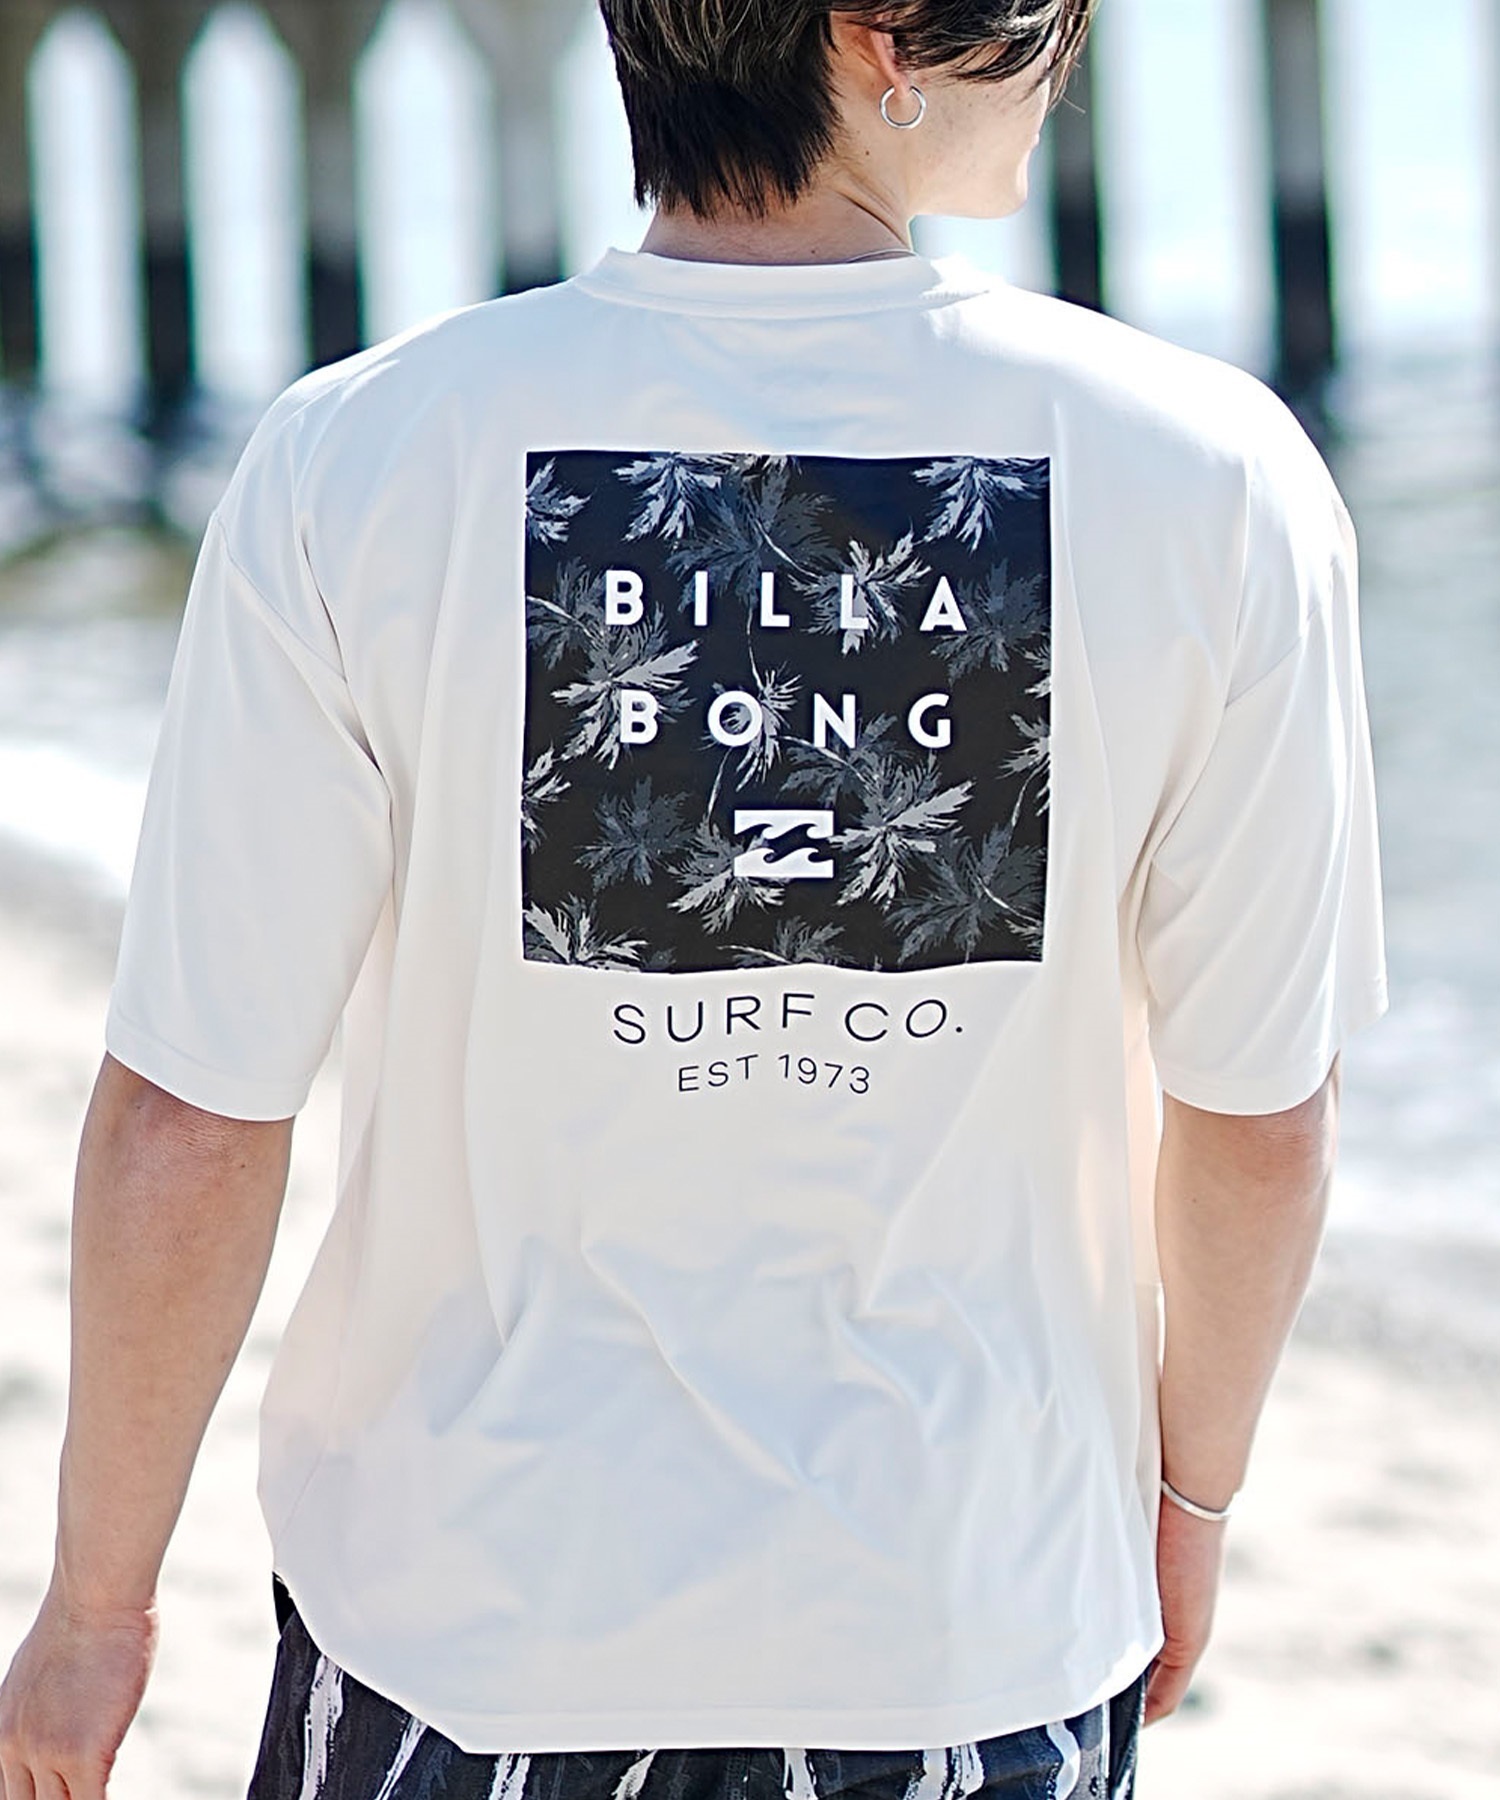 BILLABONG ビラボン メンズ 半袖 ラッシュガード Tシャツ バックプリント ユーティリティ 水陸両用 UVカット BE011-867(CRM-M)